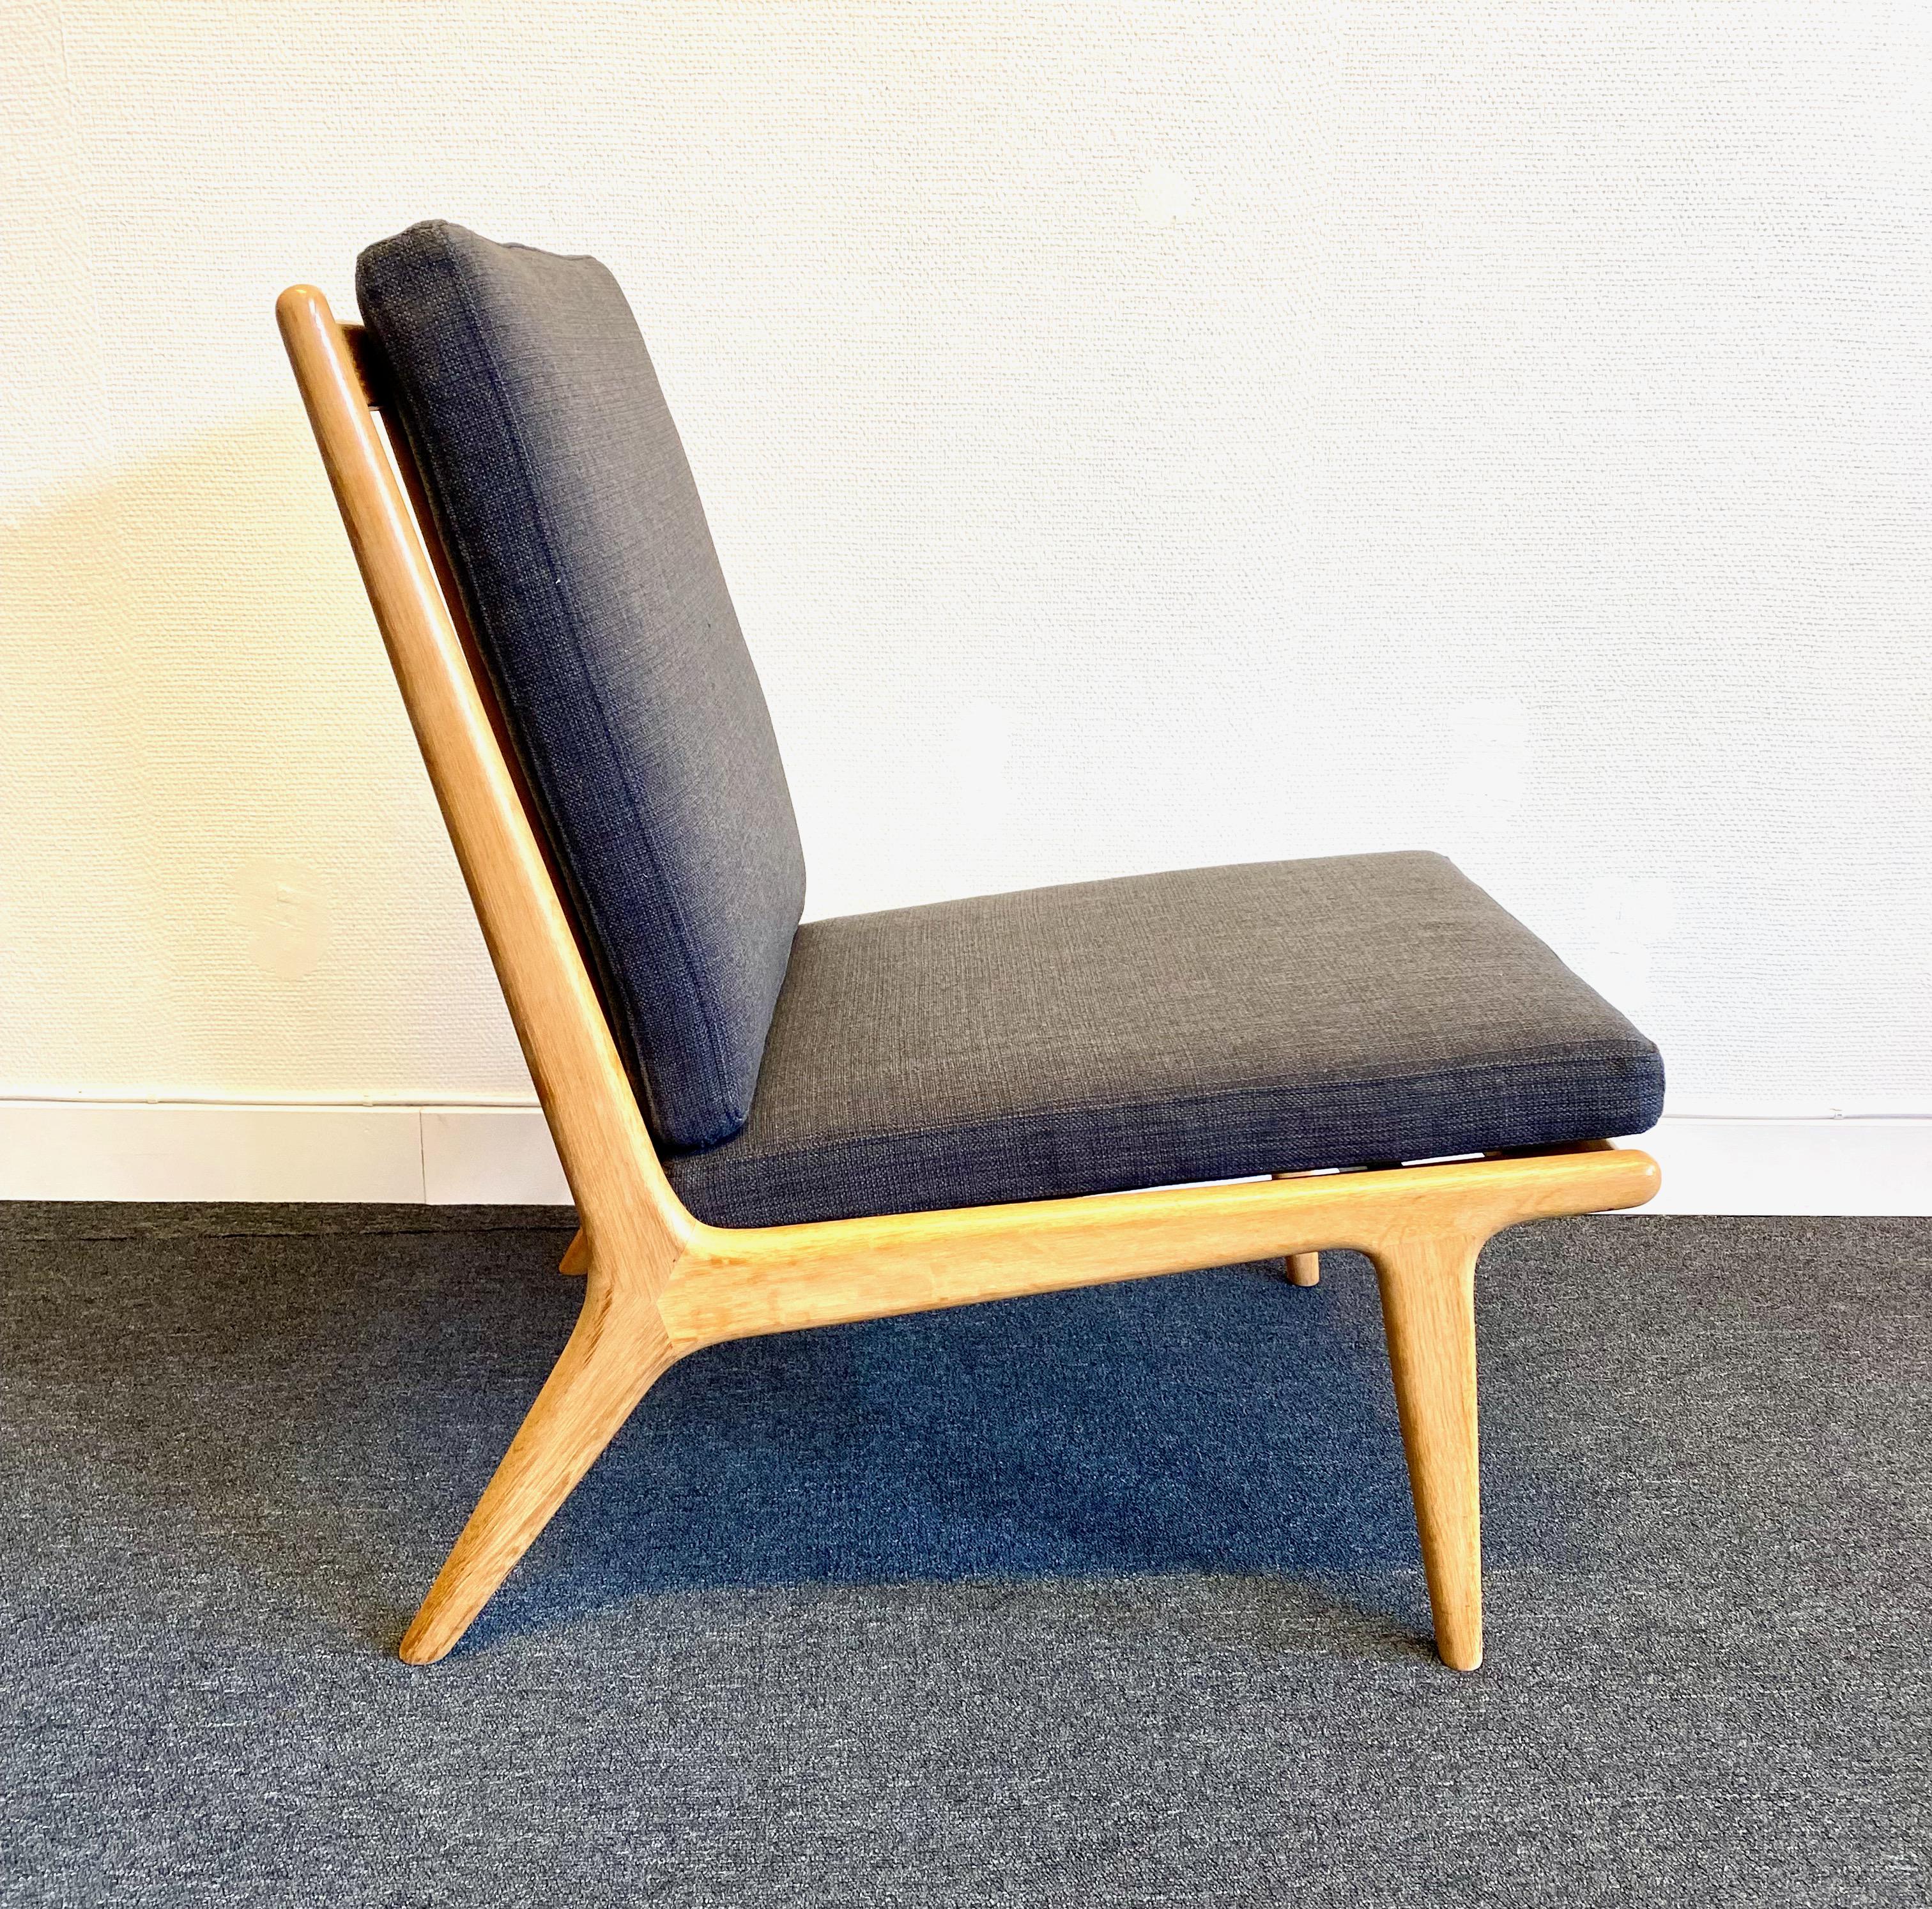 Chaise longue en chêne, et version Ekselius de la populaire chaise TV des années 60. Coussins neufs avec un revêtement lisse de qualité marron. Nous disposons actuellement de trois chaises identiques.

Karl Erik Ekselius est un designer de meubles